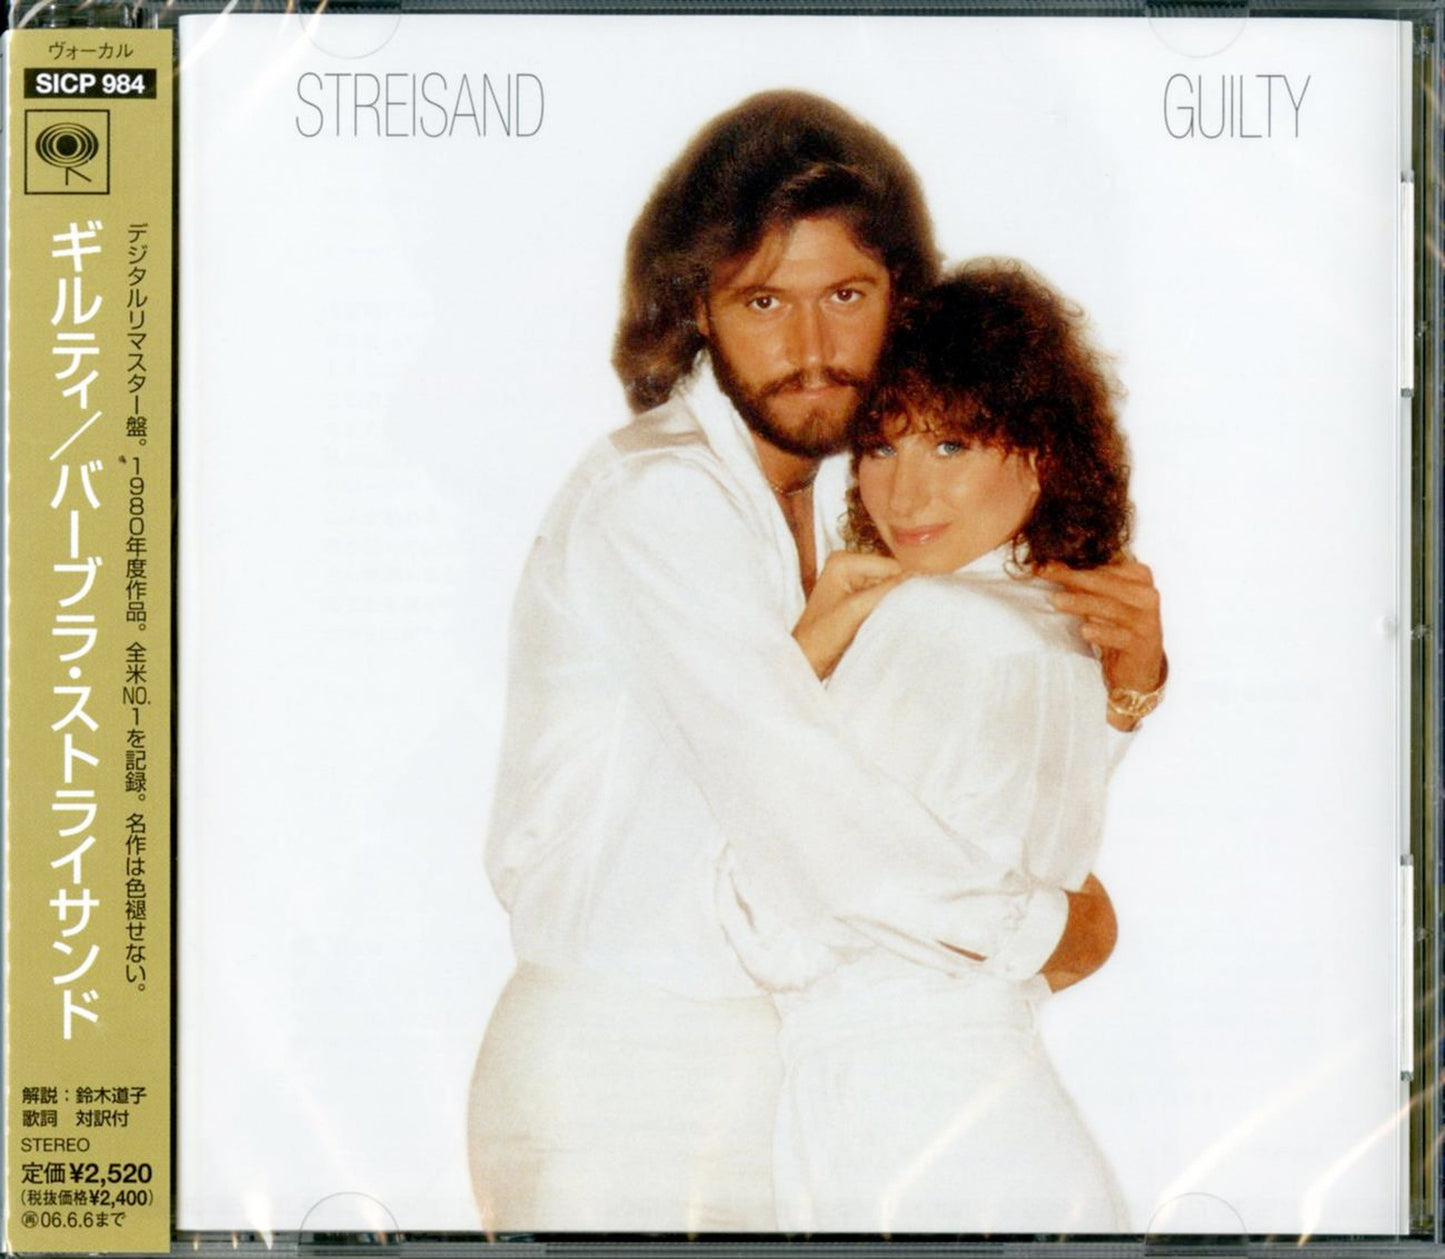 Barbra Streisand - Guilty - Japan CD